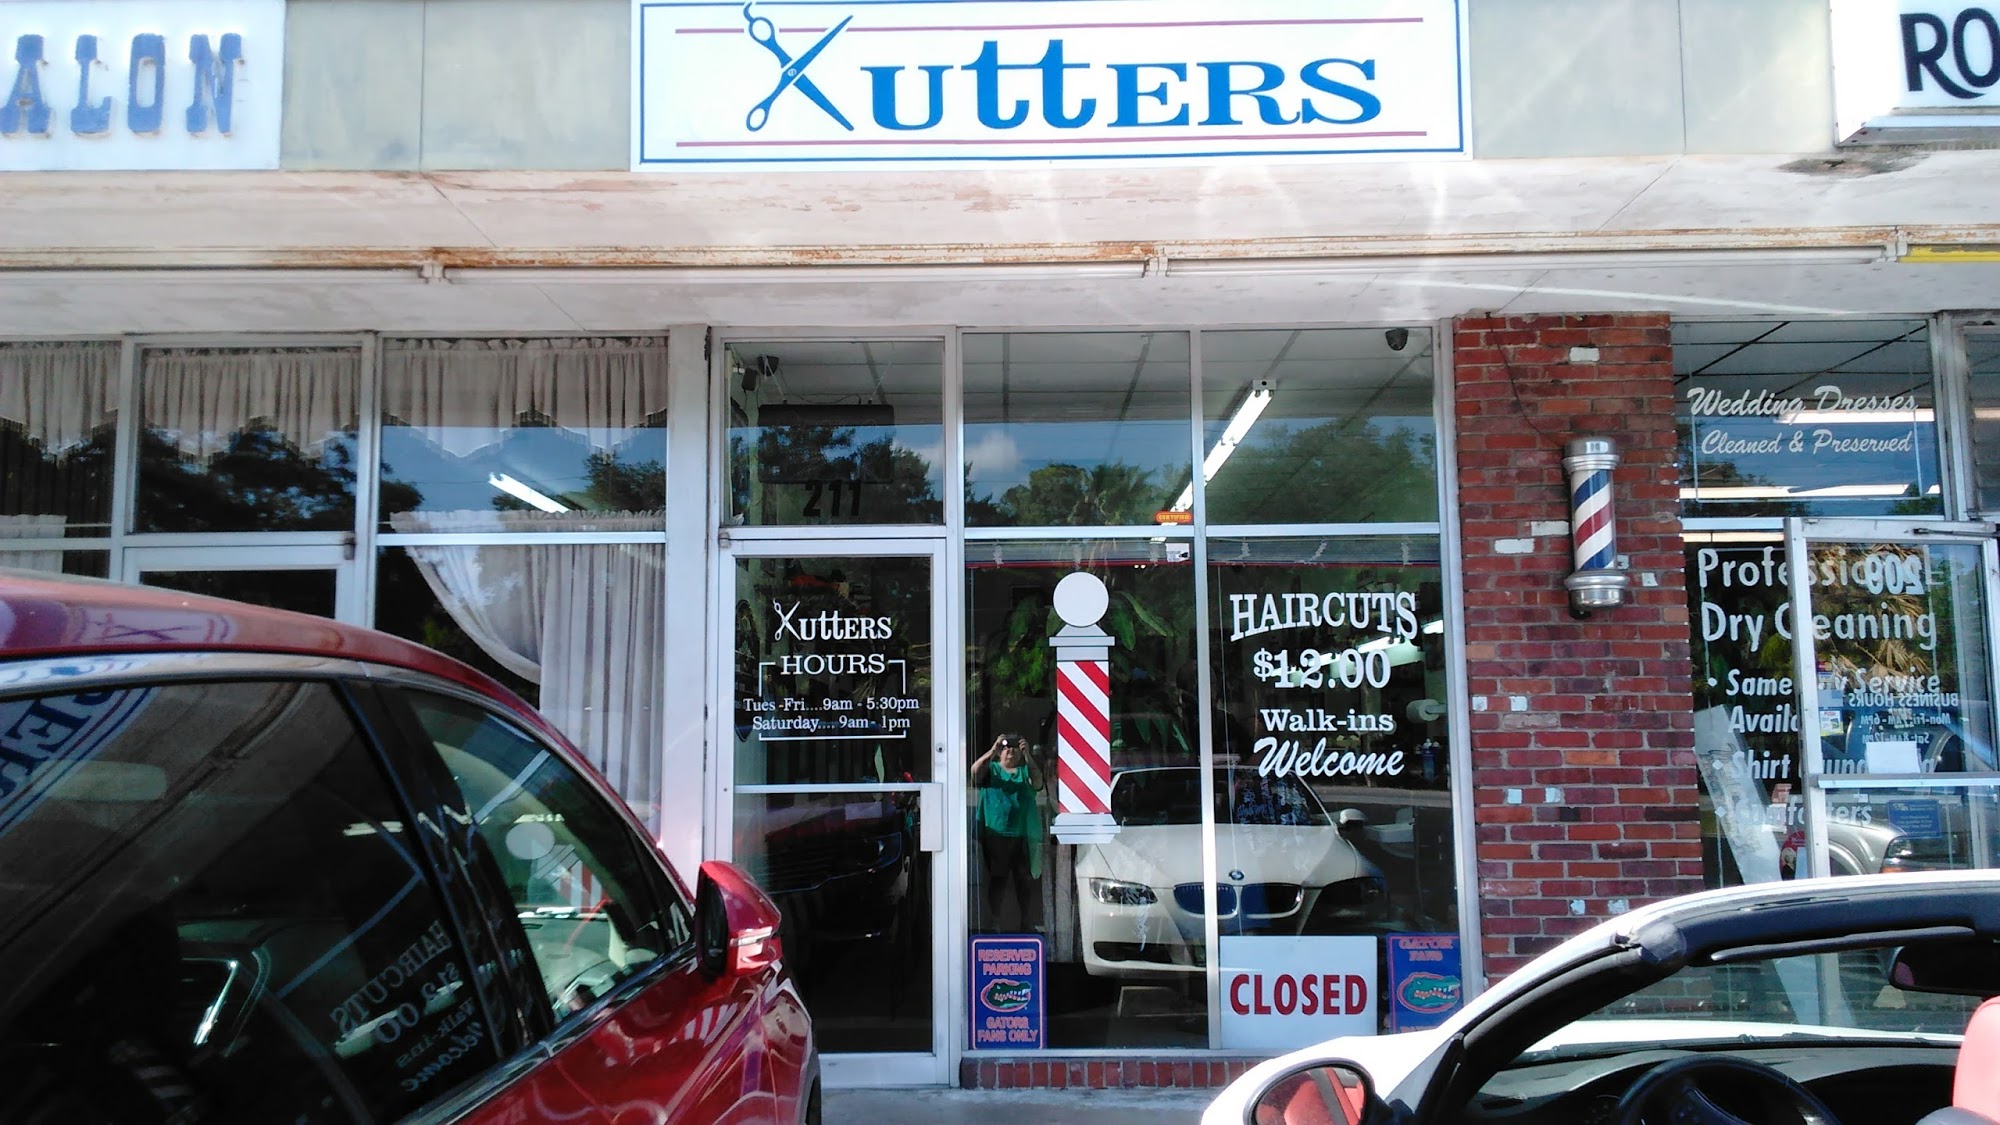 Kutters Barber Shop